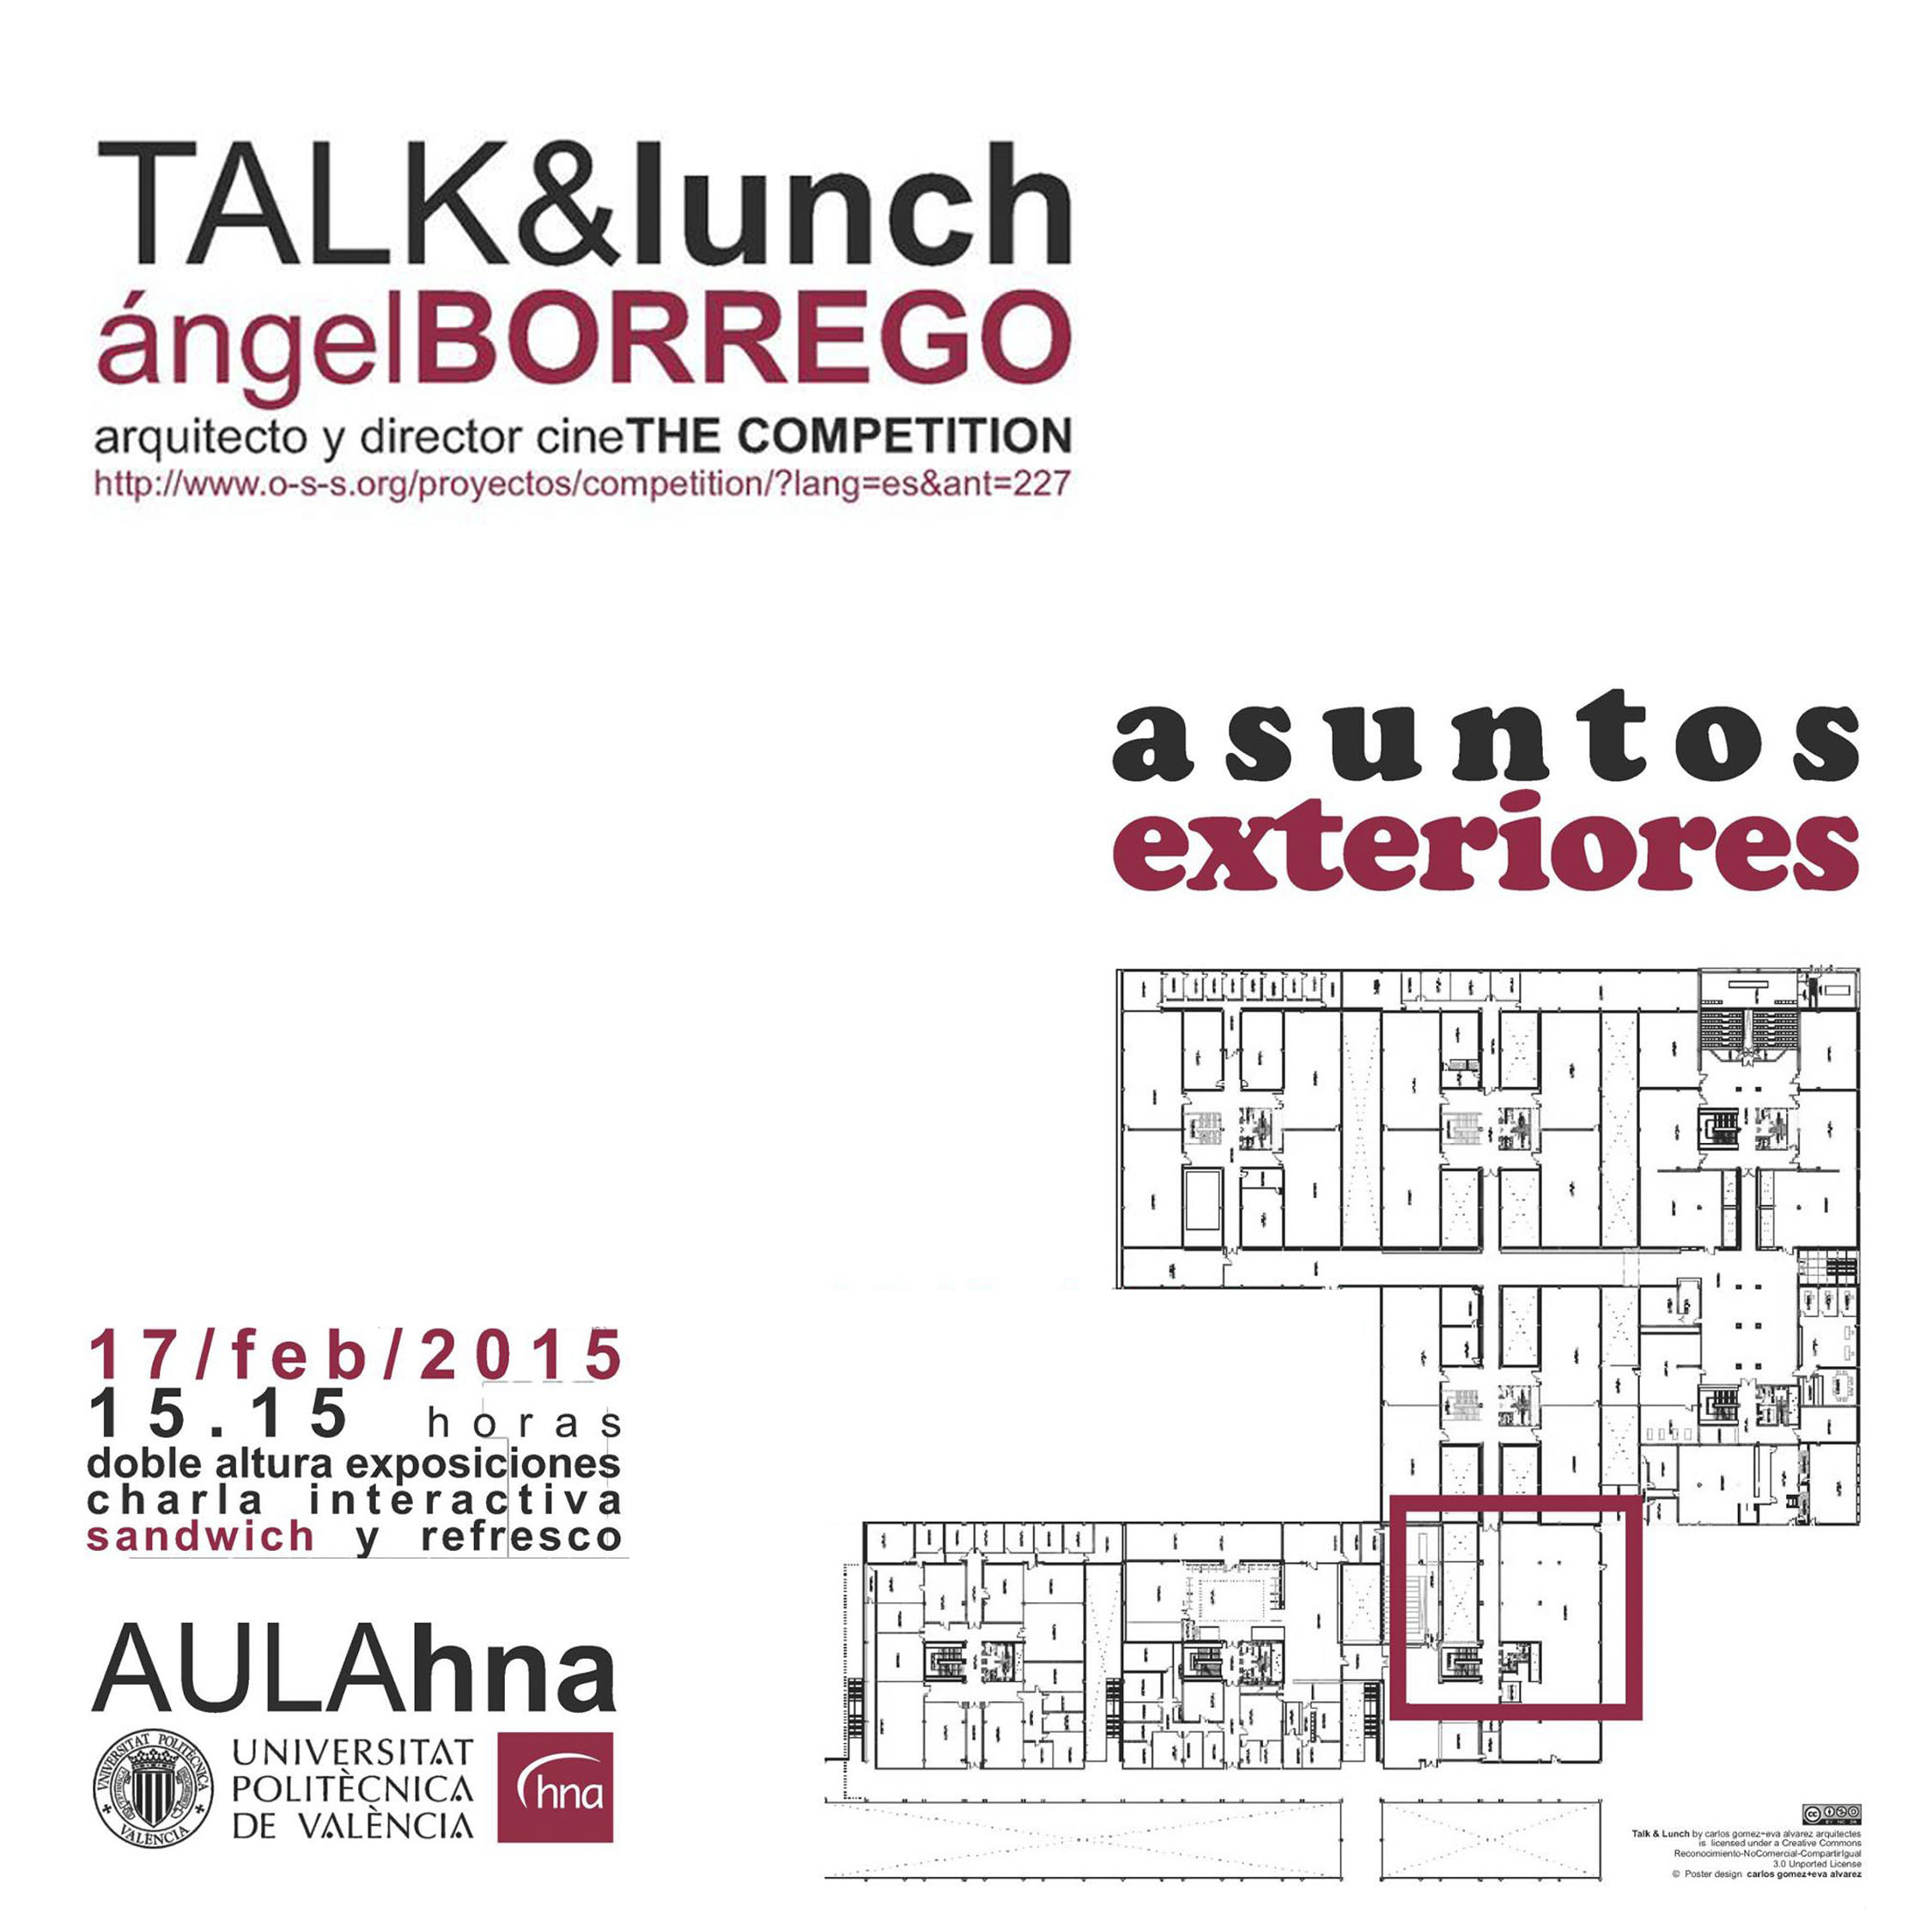 TALK & lunch: Asuntos exteriores